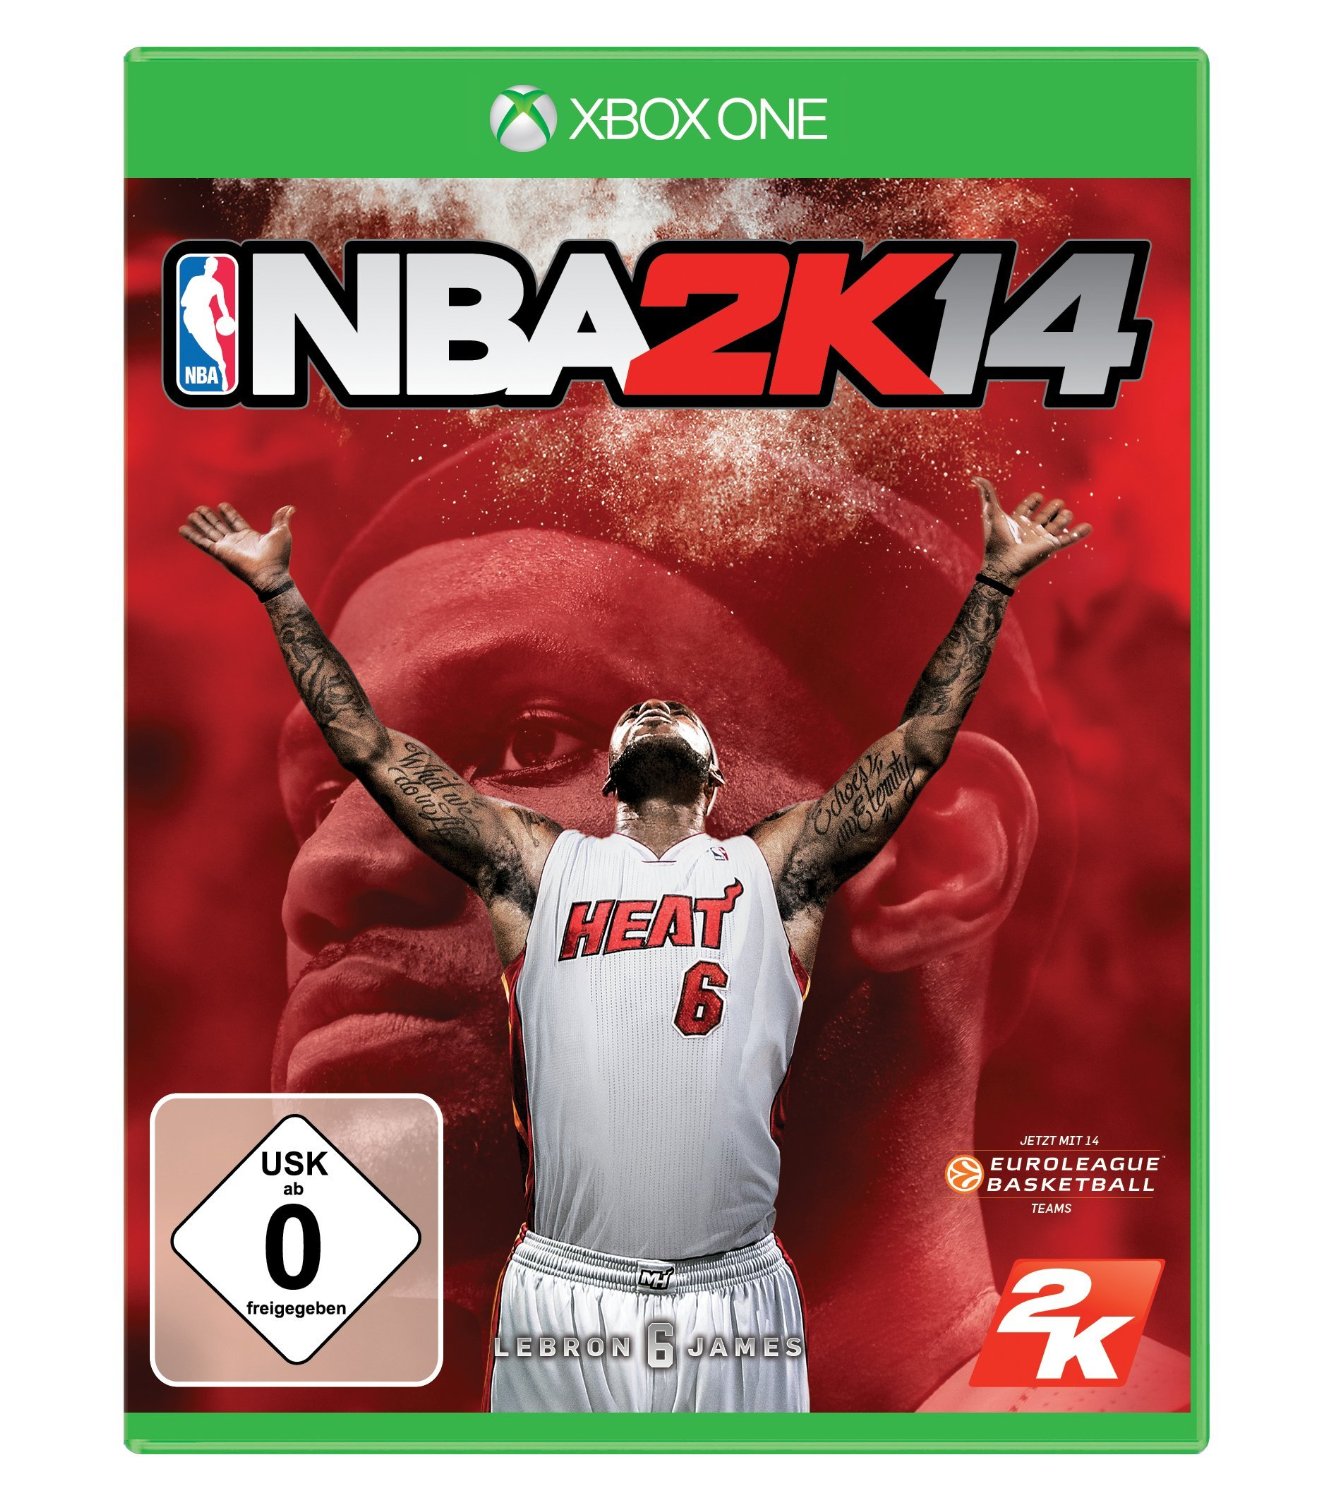 NBA 2K14 für XBox One bei Amazon für nur 12,99 Euro inkl. Prime-Versand